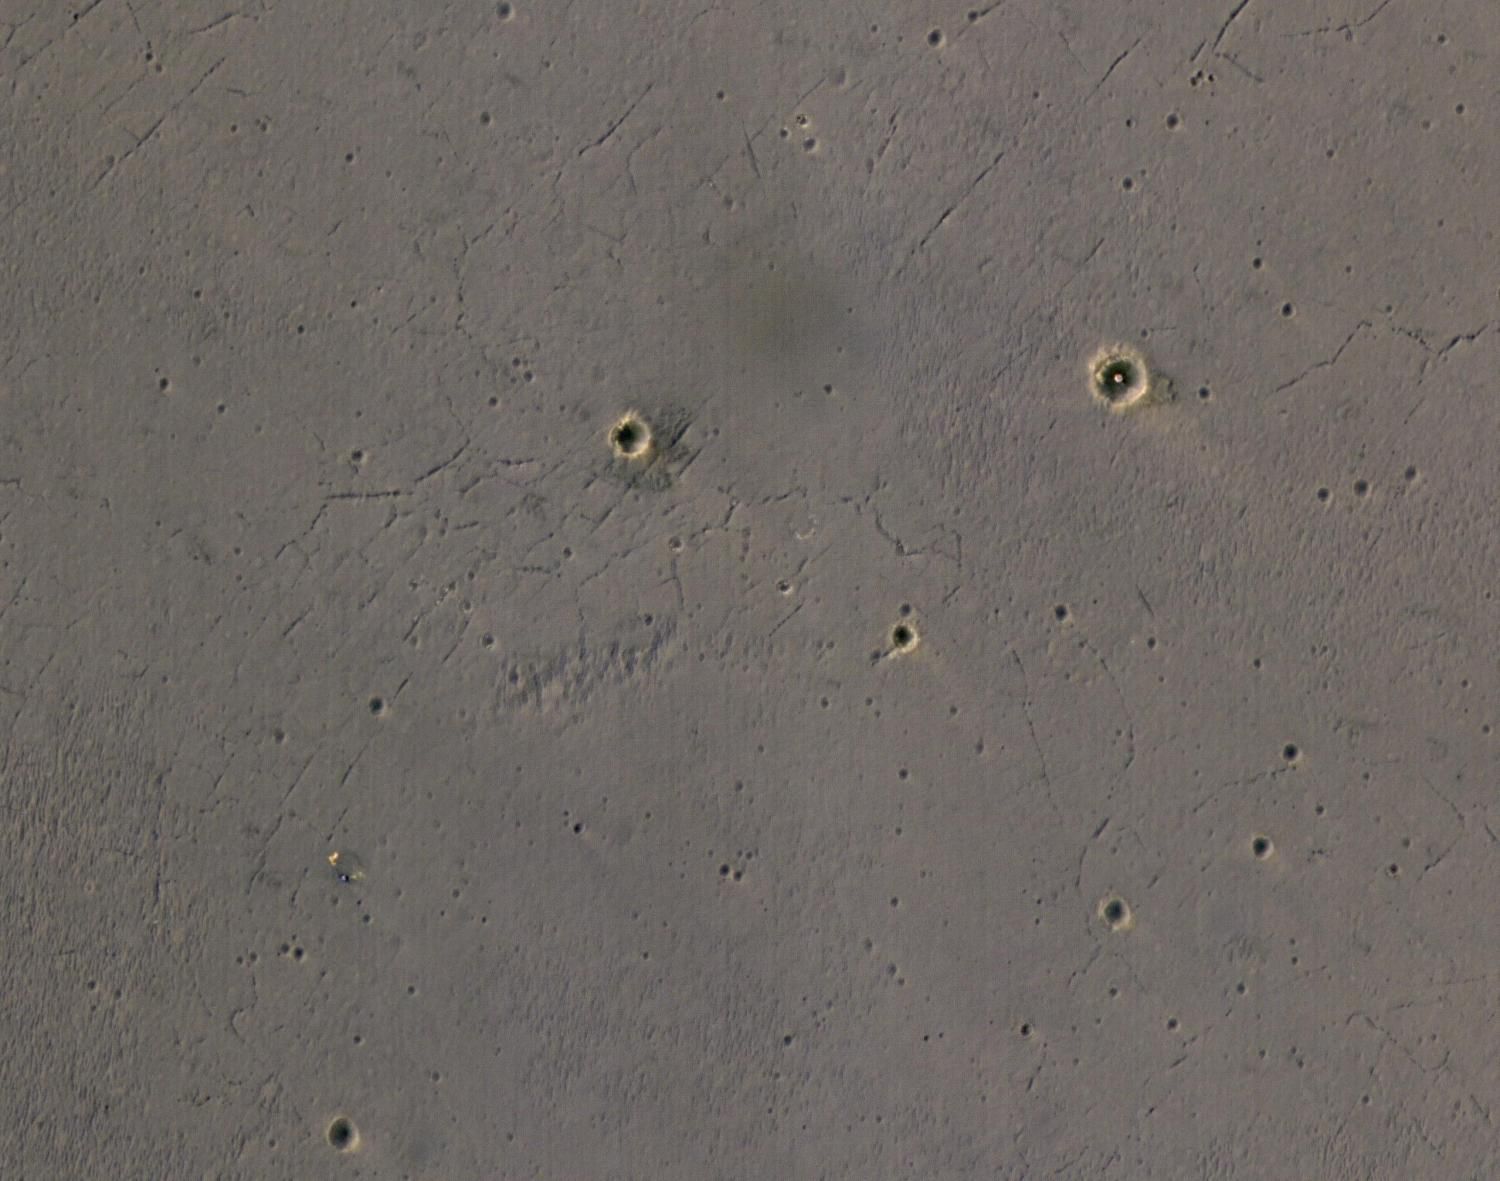 Новый взгляд на место посадки марсианского ровера, состоявшейся в 2004 г.